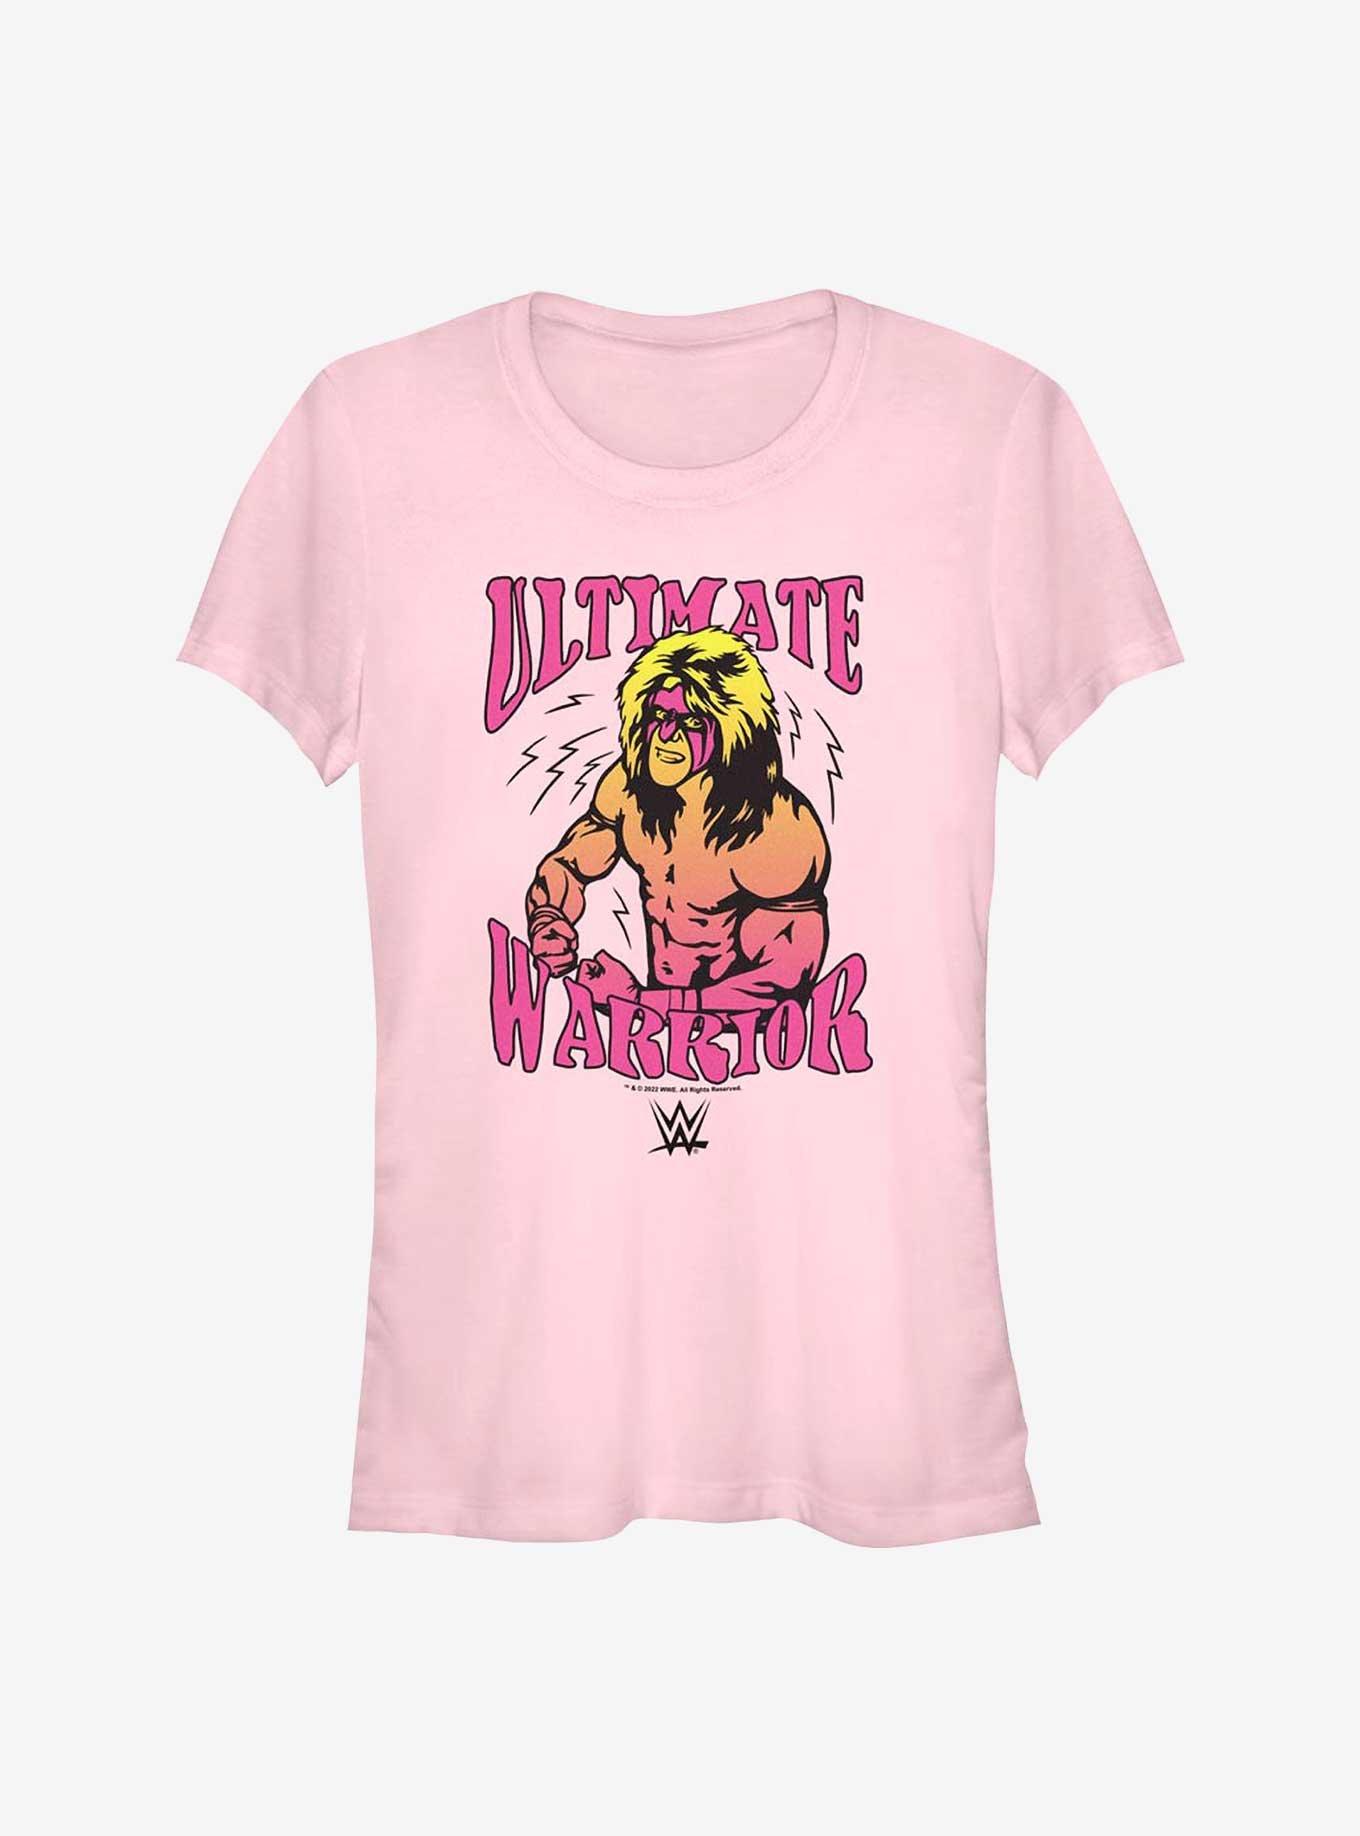 WWE Retro Ultimate Warrior Girls T-Shirt